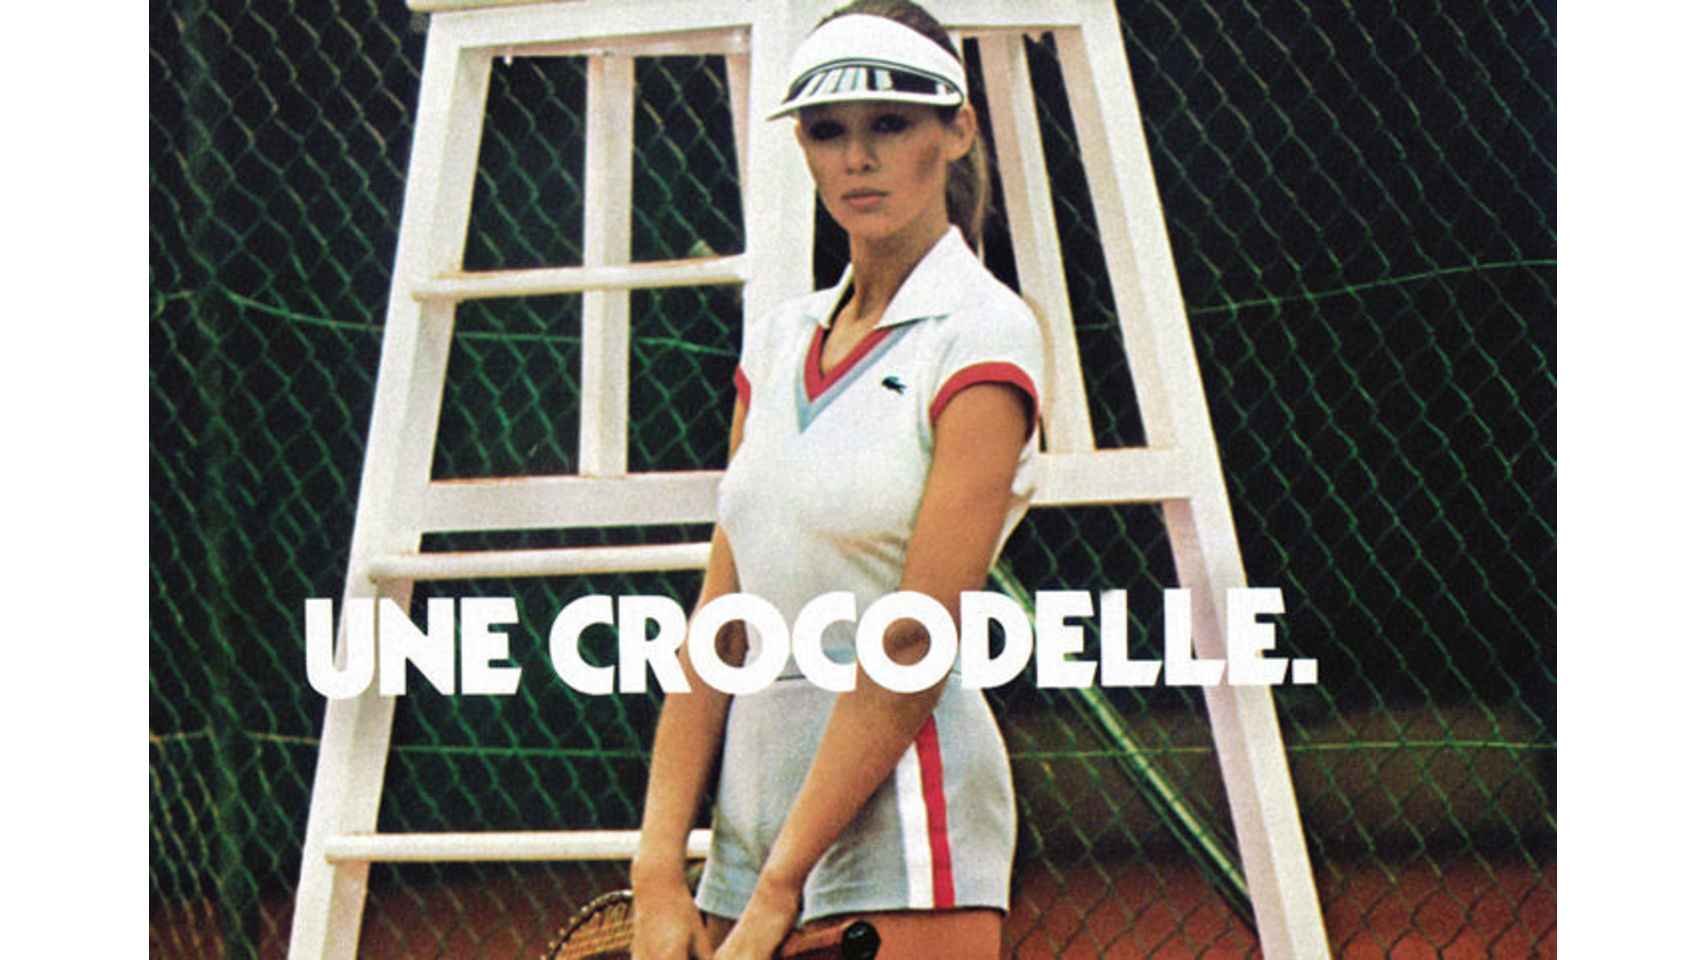 Publicidad Lacoste: Une crocodelle.